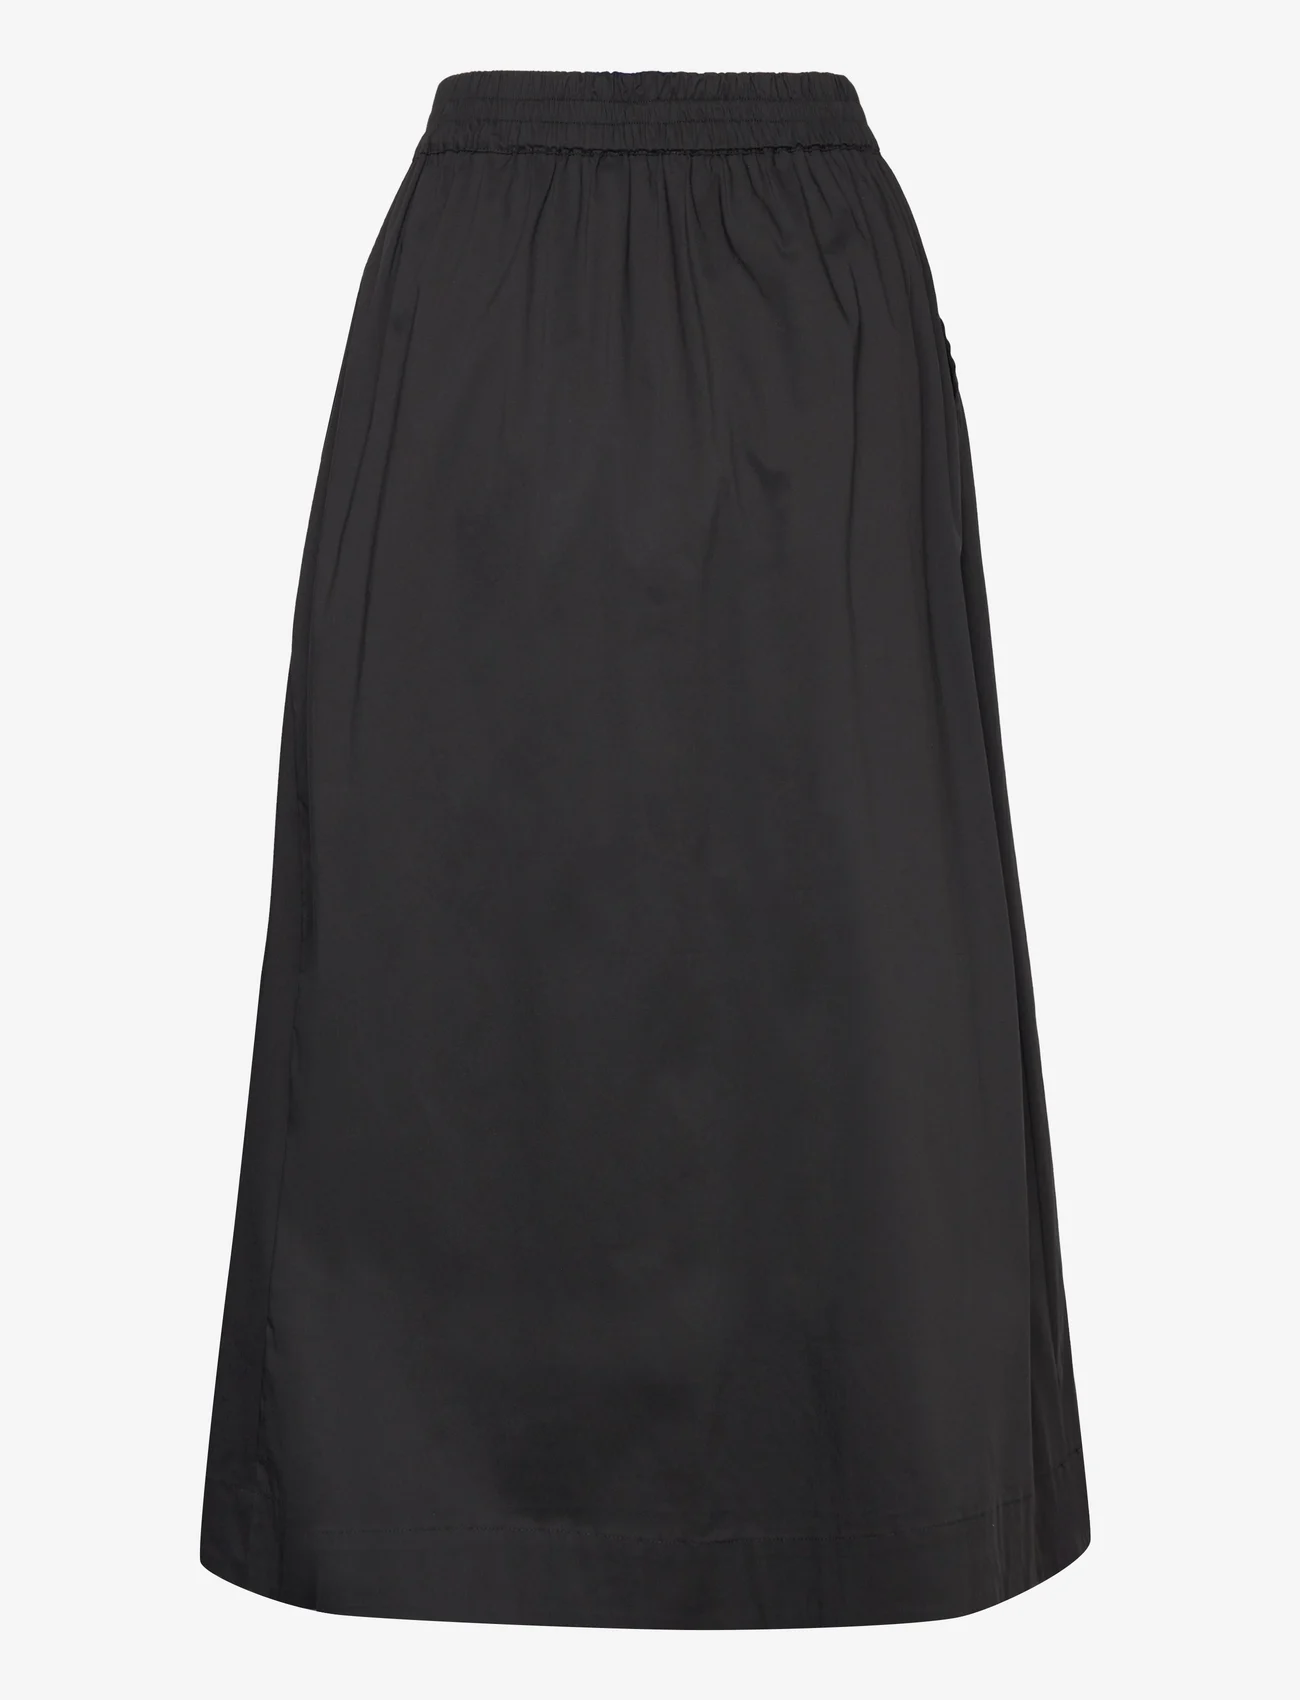 Coster Copenhagen - CC Heart PHOEBE long skirt - midi kjolar - black - 1